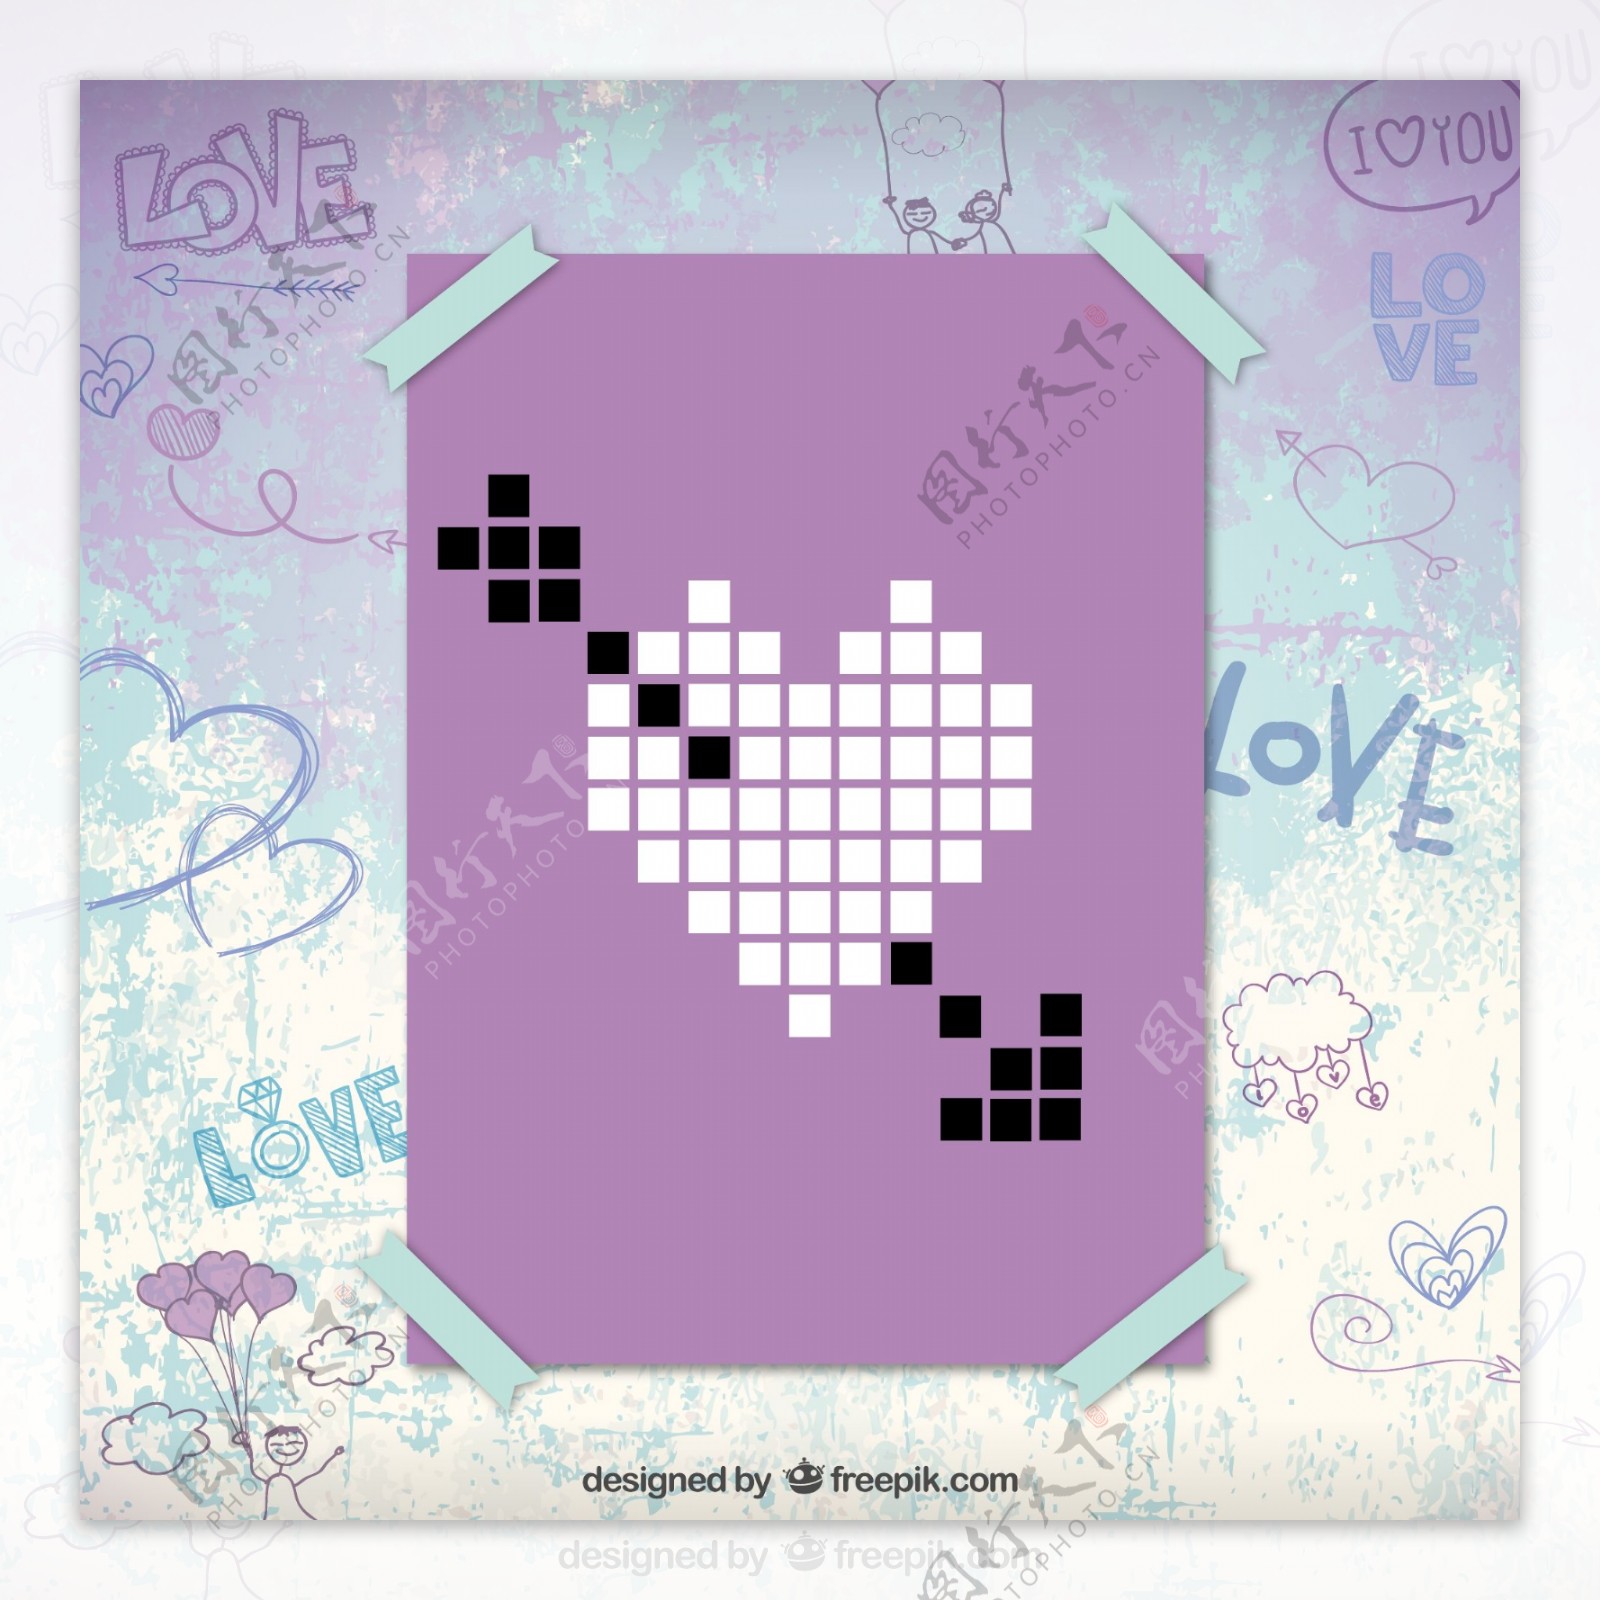 紫色像素风格爱心卡片矢量素材